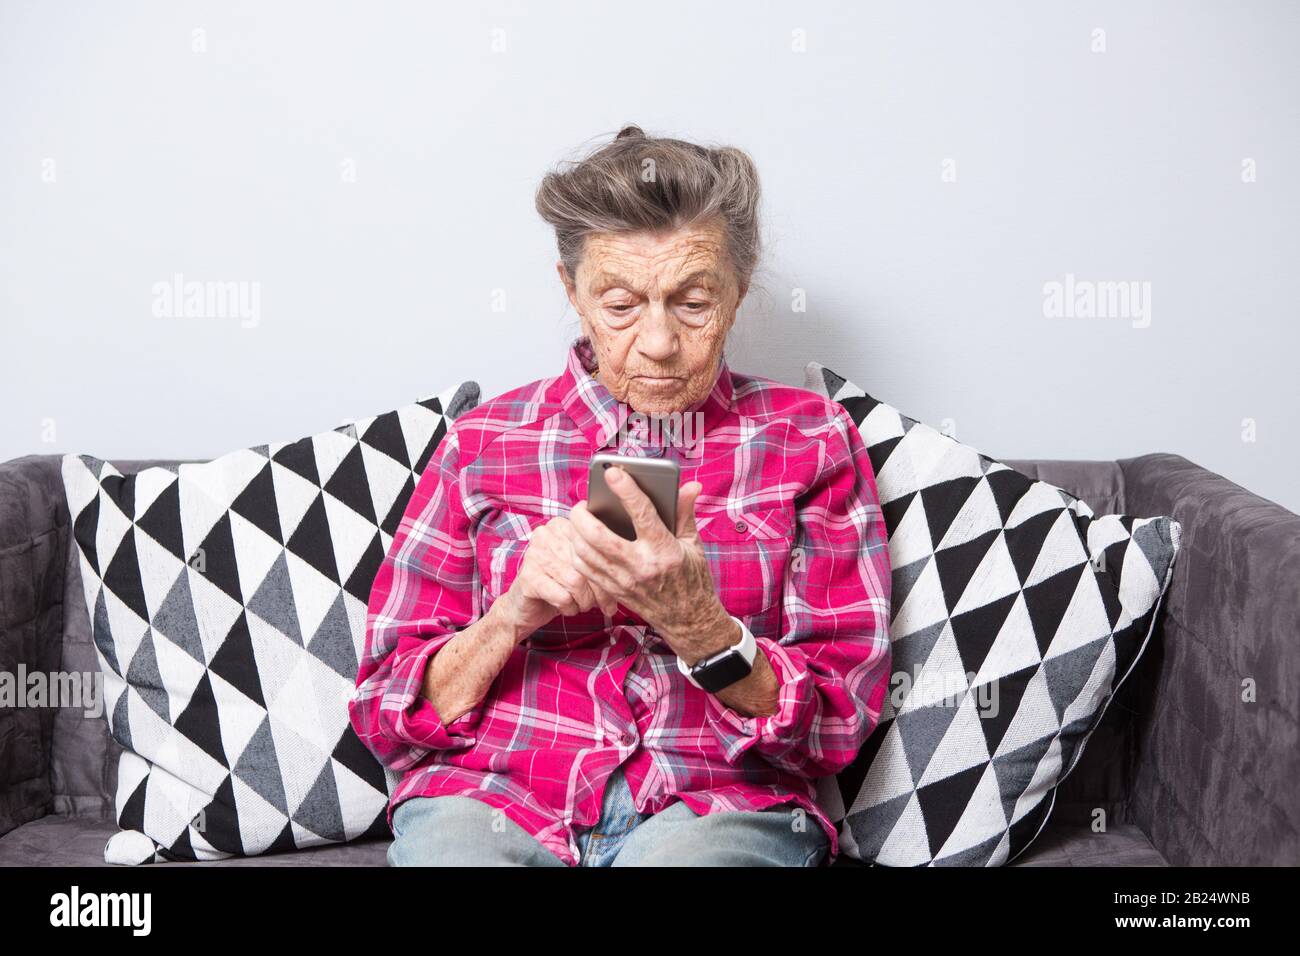 Vieux thème personne utilise la technologie. vieille femme aux cheveux gris et blancs avec les rides se trouve accueil dans la salle de séjour sur le canapé et utilise votre téléphone mobile en mains, l'air Banque D'Images